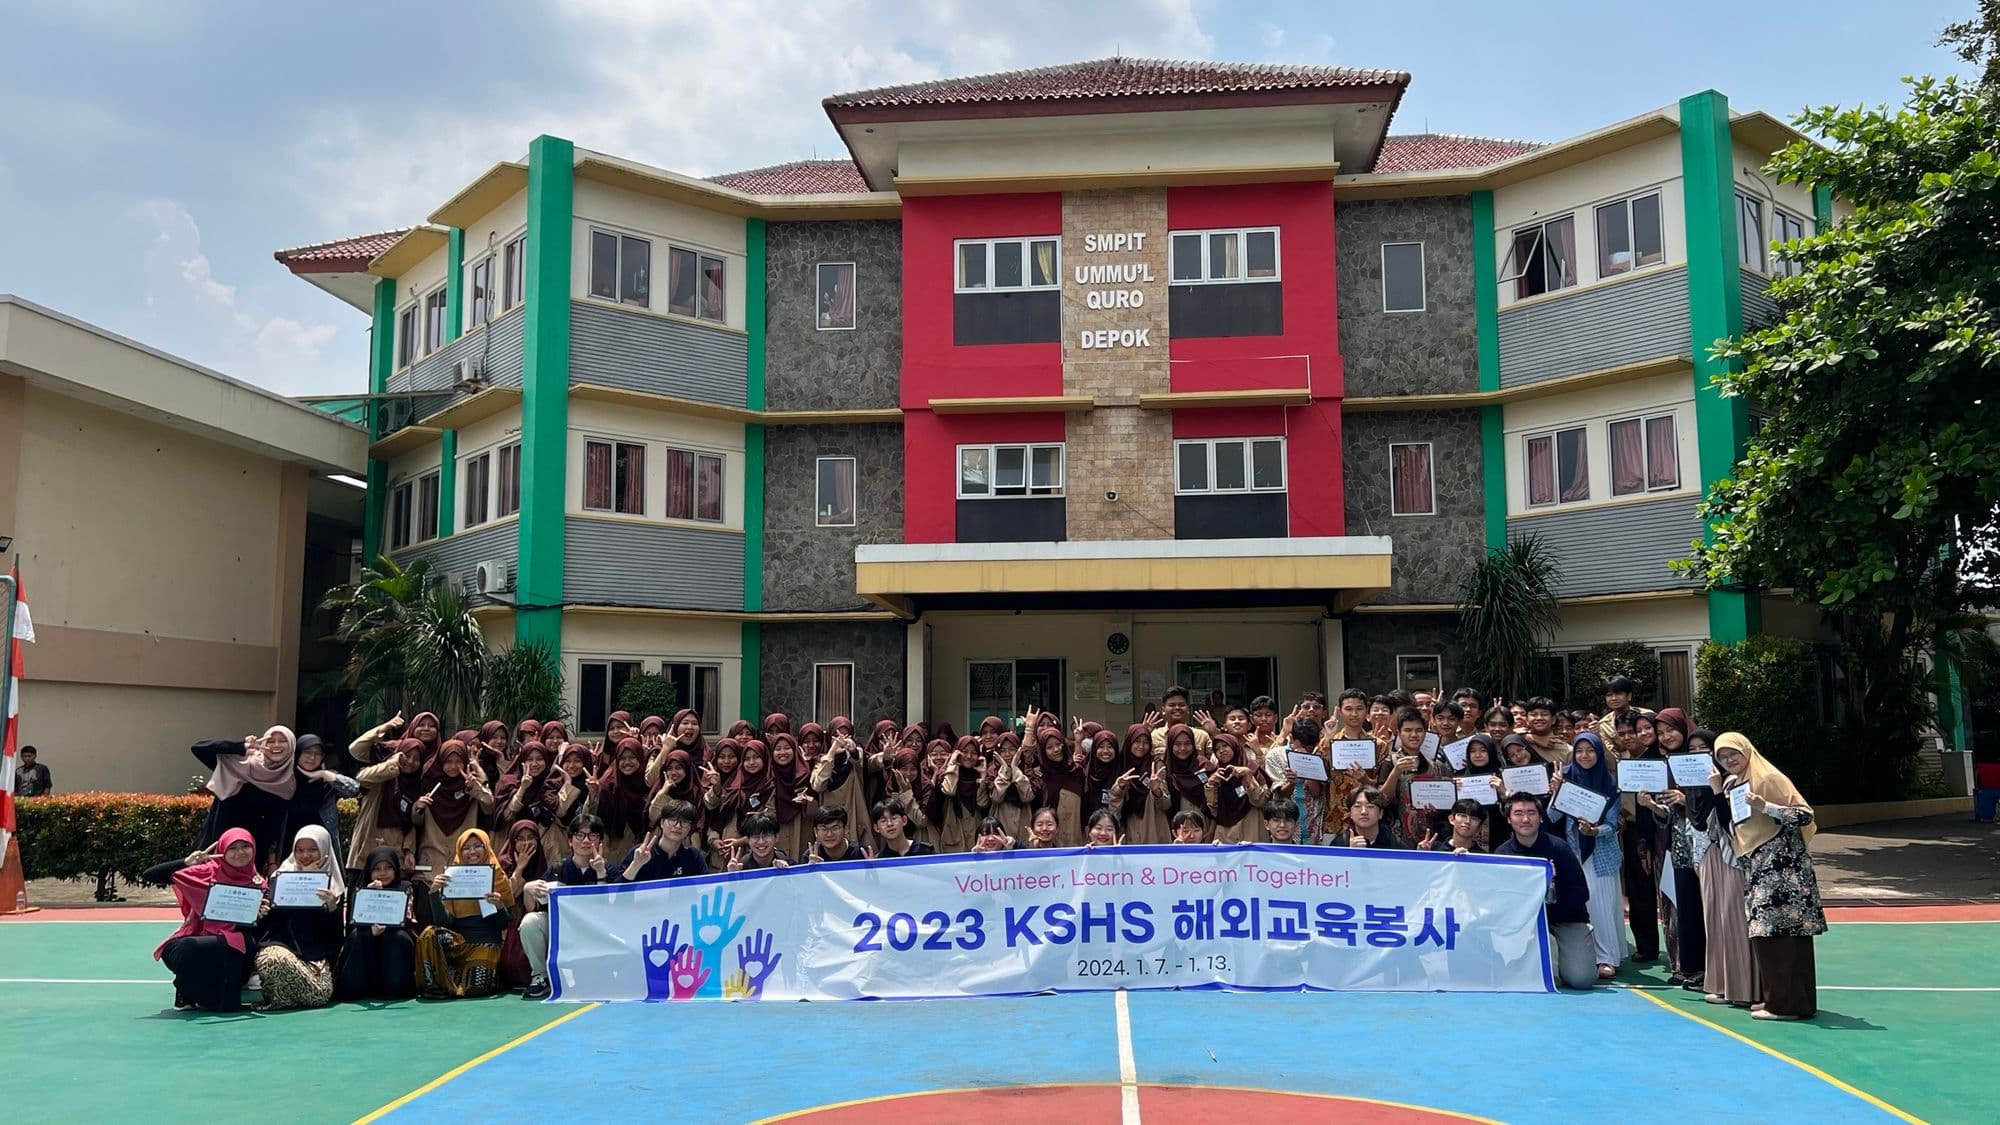 🇮🇩 자카르타 교육 봉사 활동 기록 - 우물쿠로 중학교(UMMU'L QURO DEPOK)